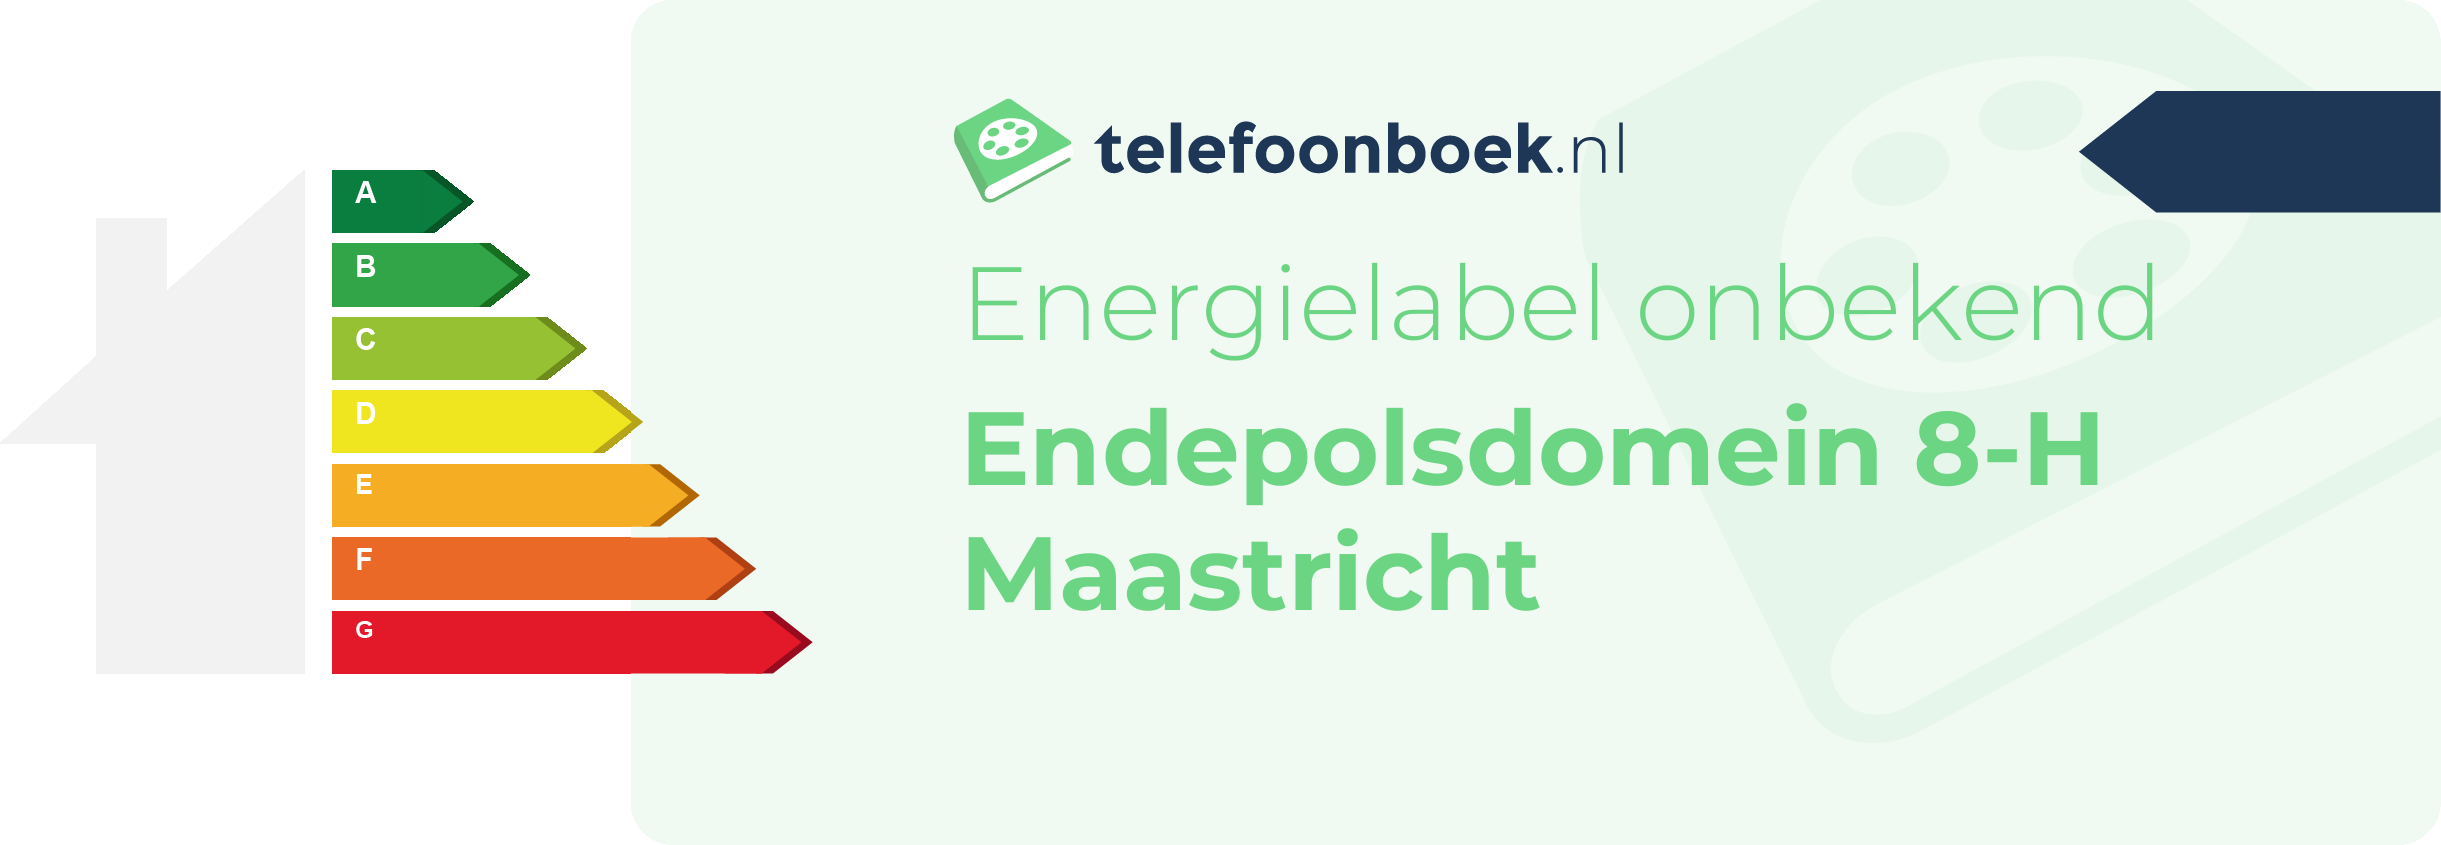 Energielabel Endepolsdomein 8-H Maastricht